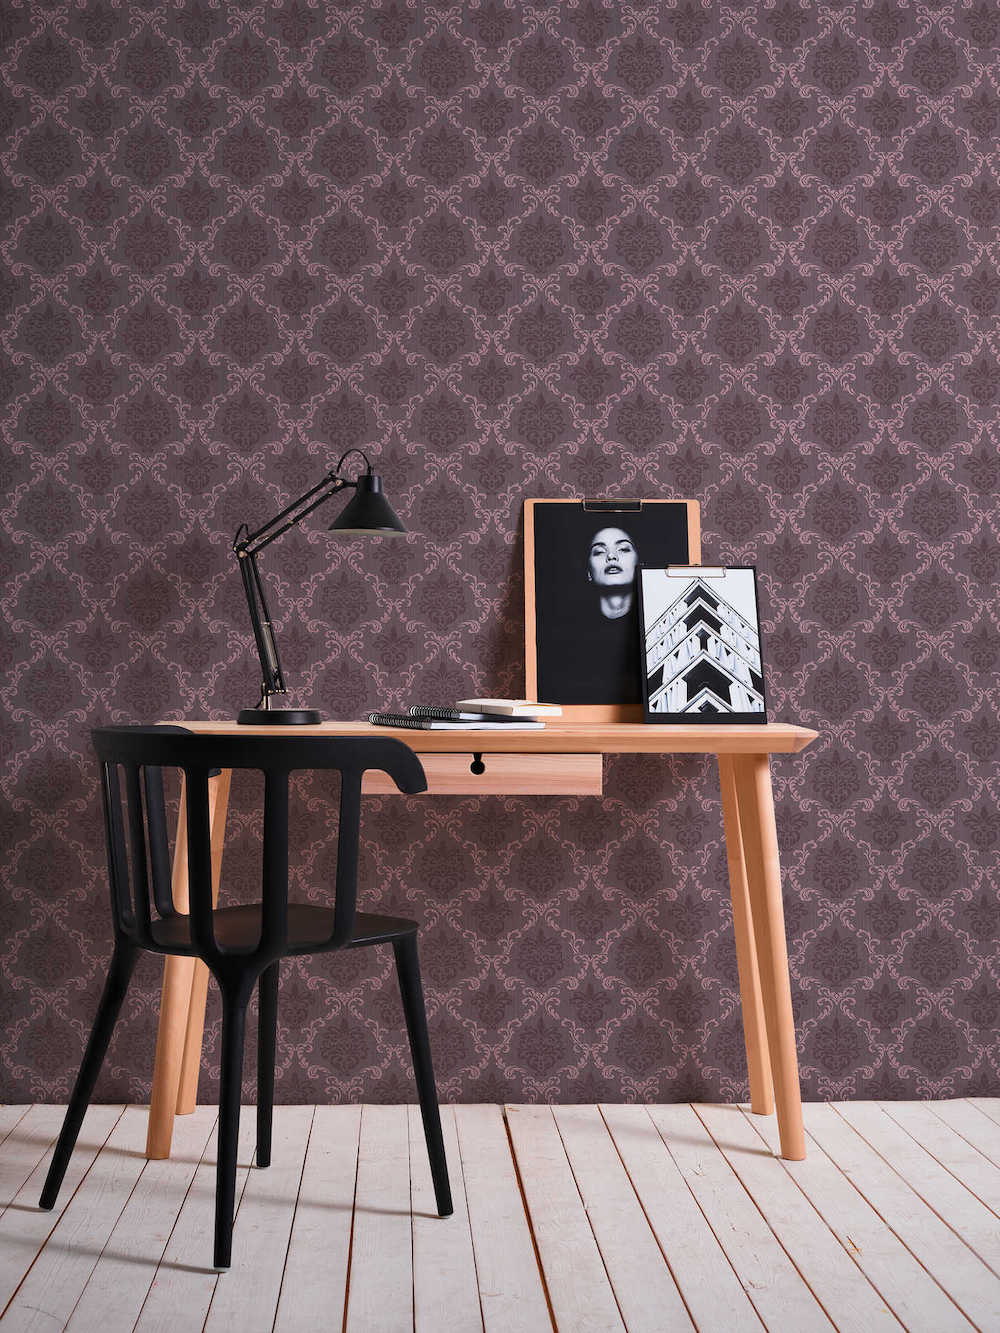 Tessuto - Filigree Trellis textile wallpaper AS Creation    